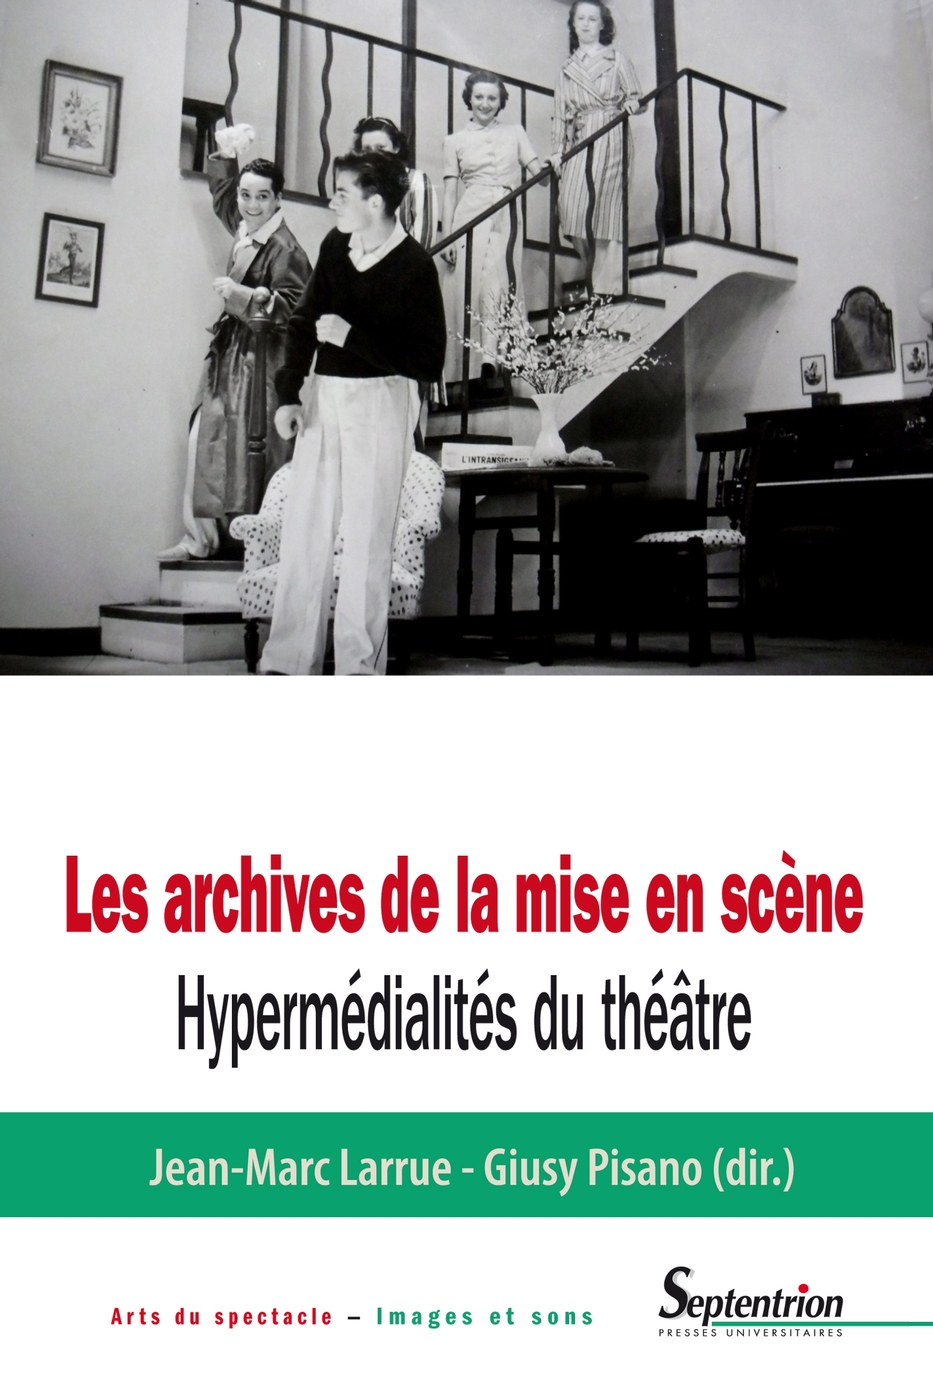 J.-M. Larrue & G. Pisano (dir.), Les Archives de la mise en scène. Hypermédialités du théâtre